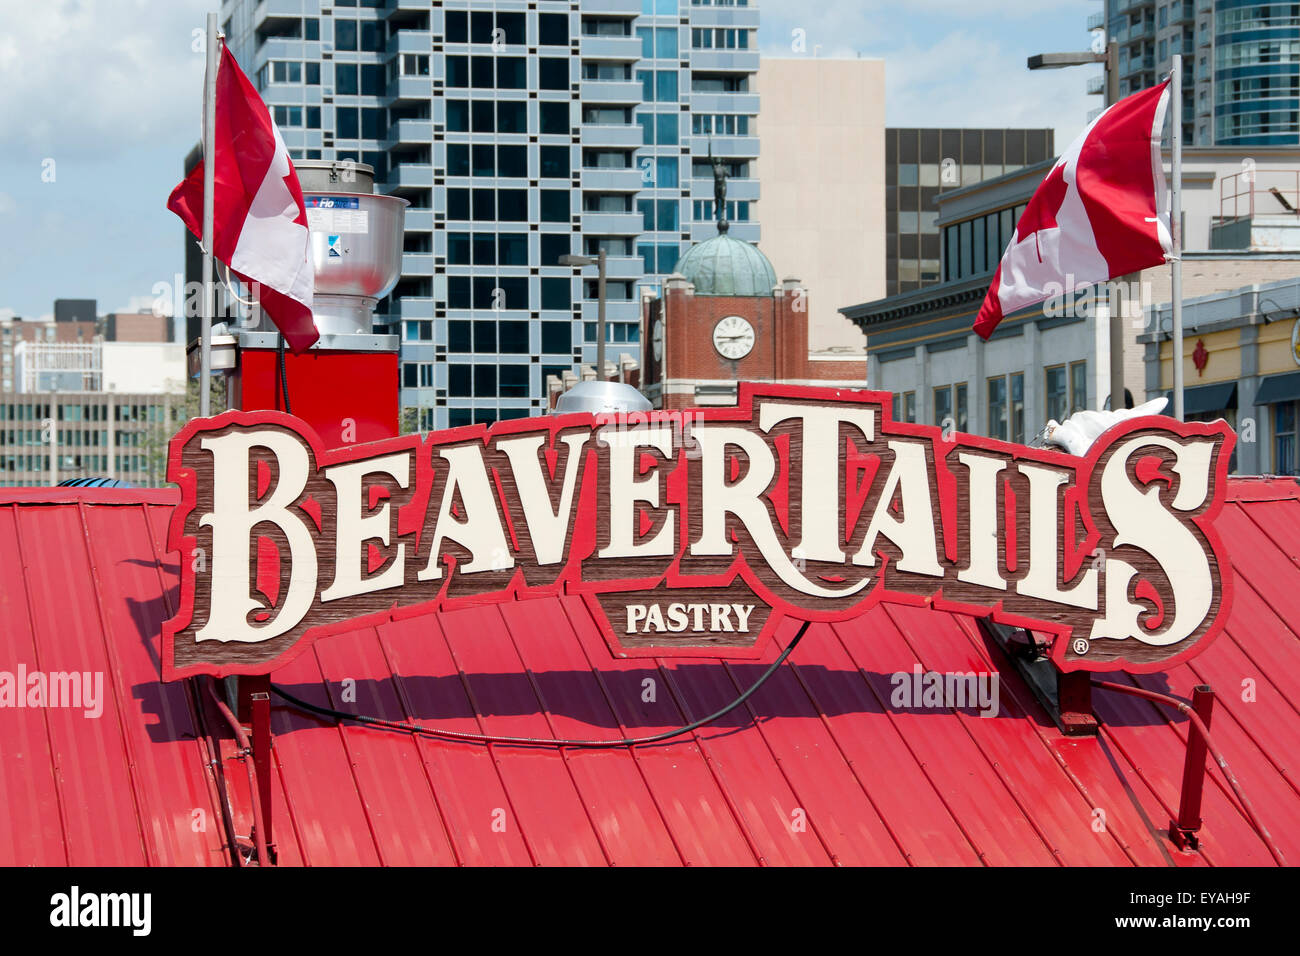 BeaverTails est une marque déposée canadienne la vente d'une pâtisserie frite qui ressemble à une queue de castor Banque D'Images